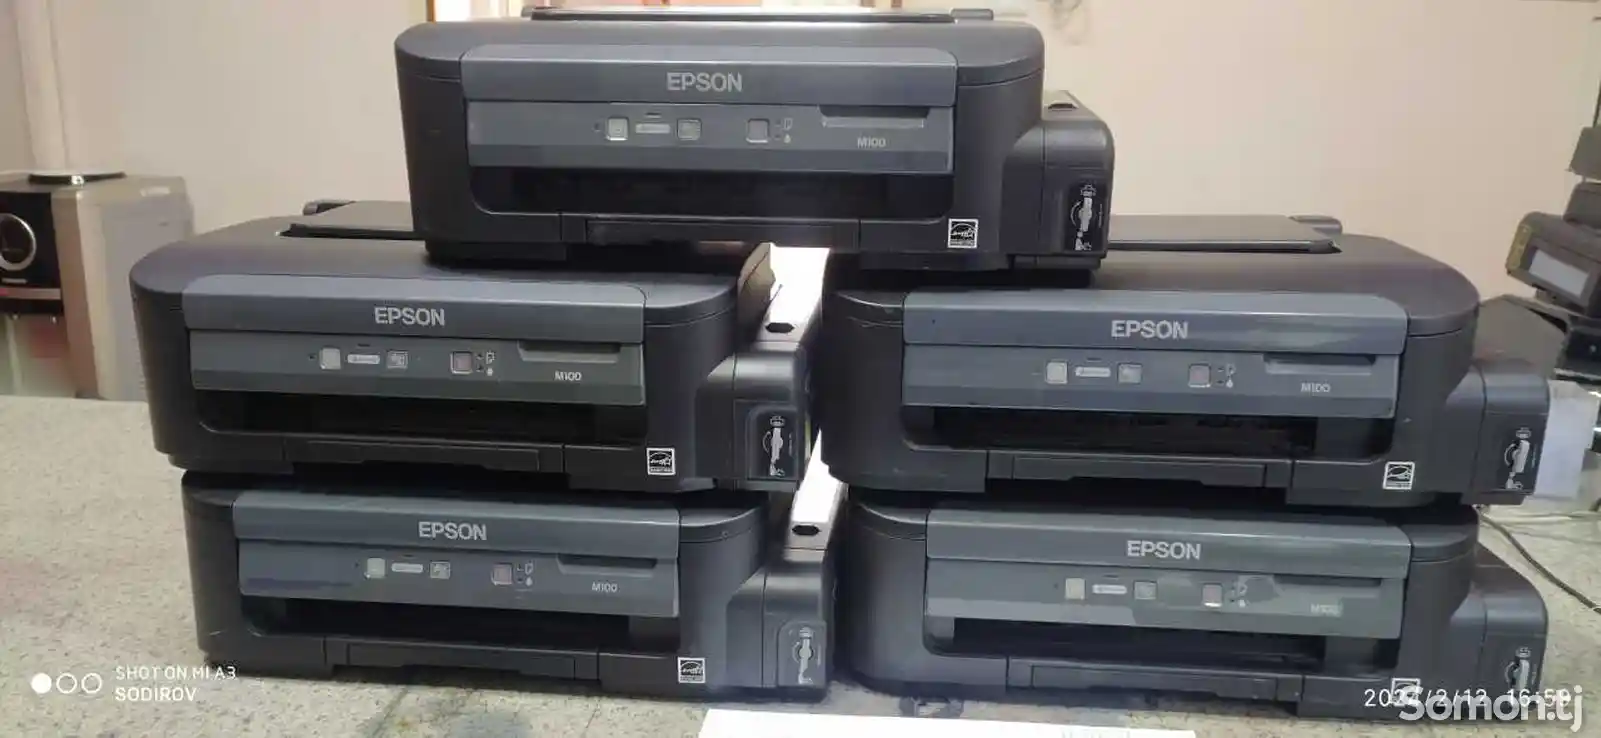 Принтер струйный черно белый Epson m100-1